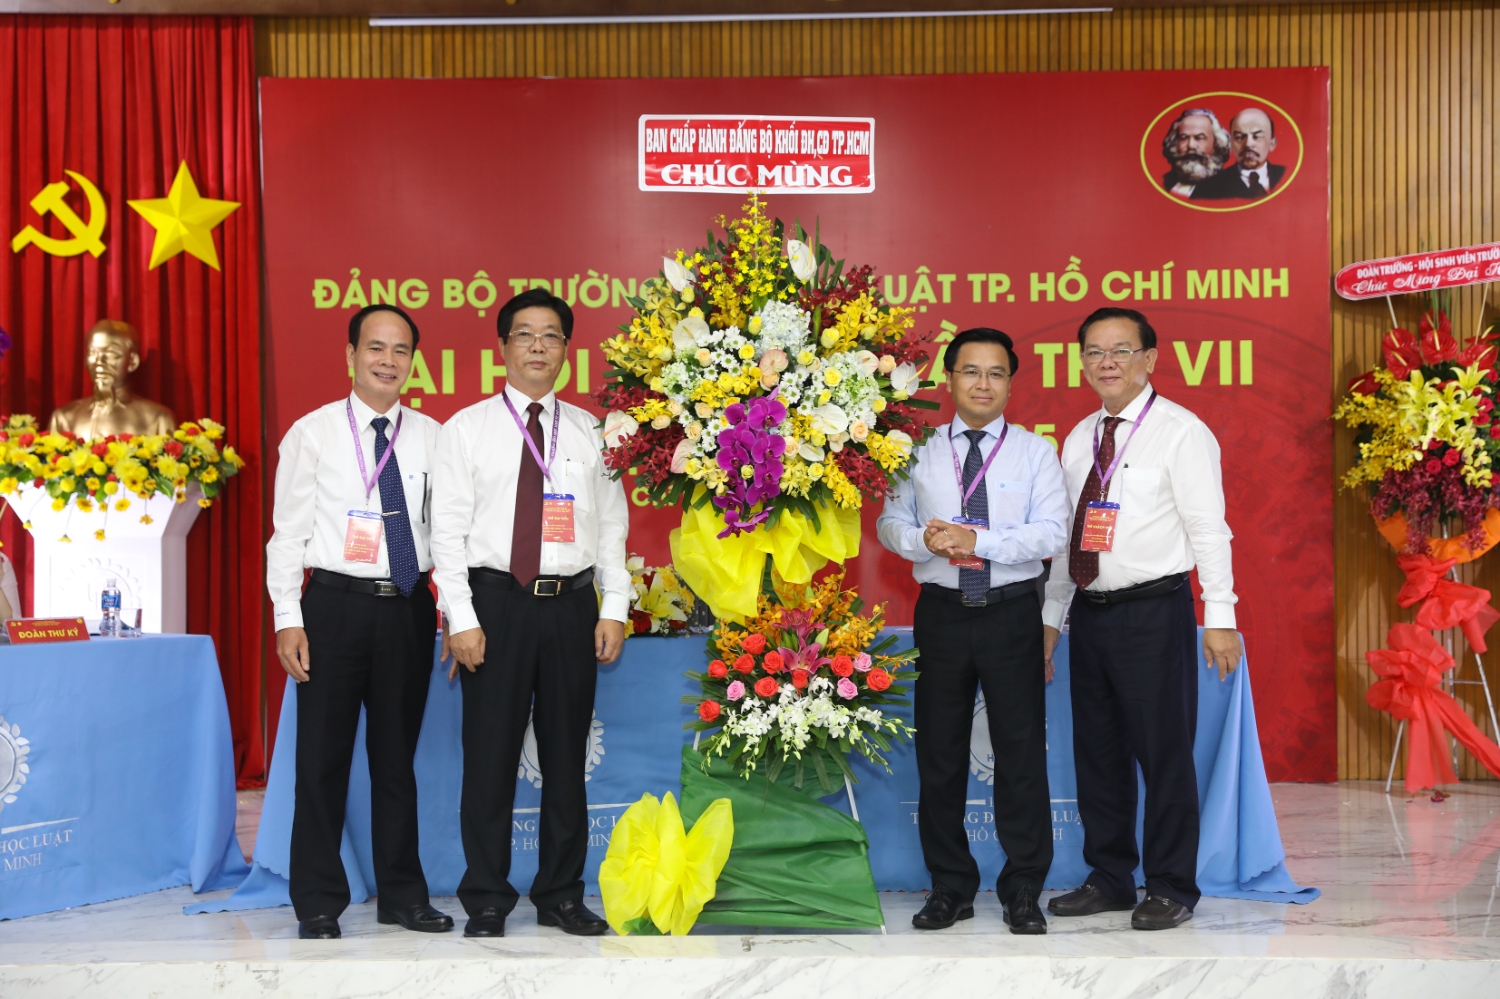 1.	Đồng chí Nguyễn Đông Phong – Bí thư Đảng ủy Khối tặng hoa chúc mừng đại hội